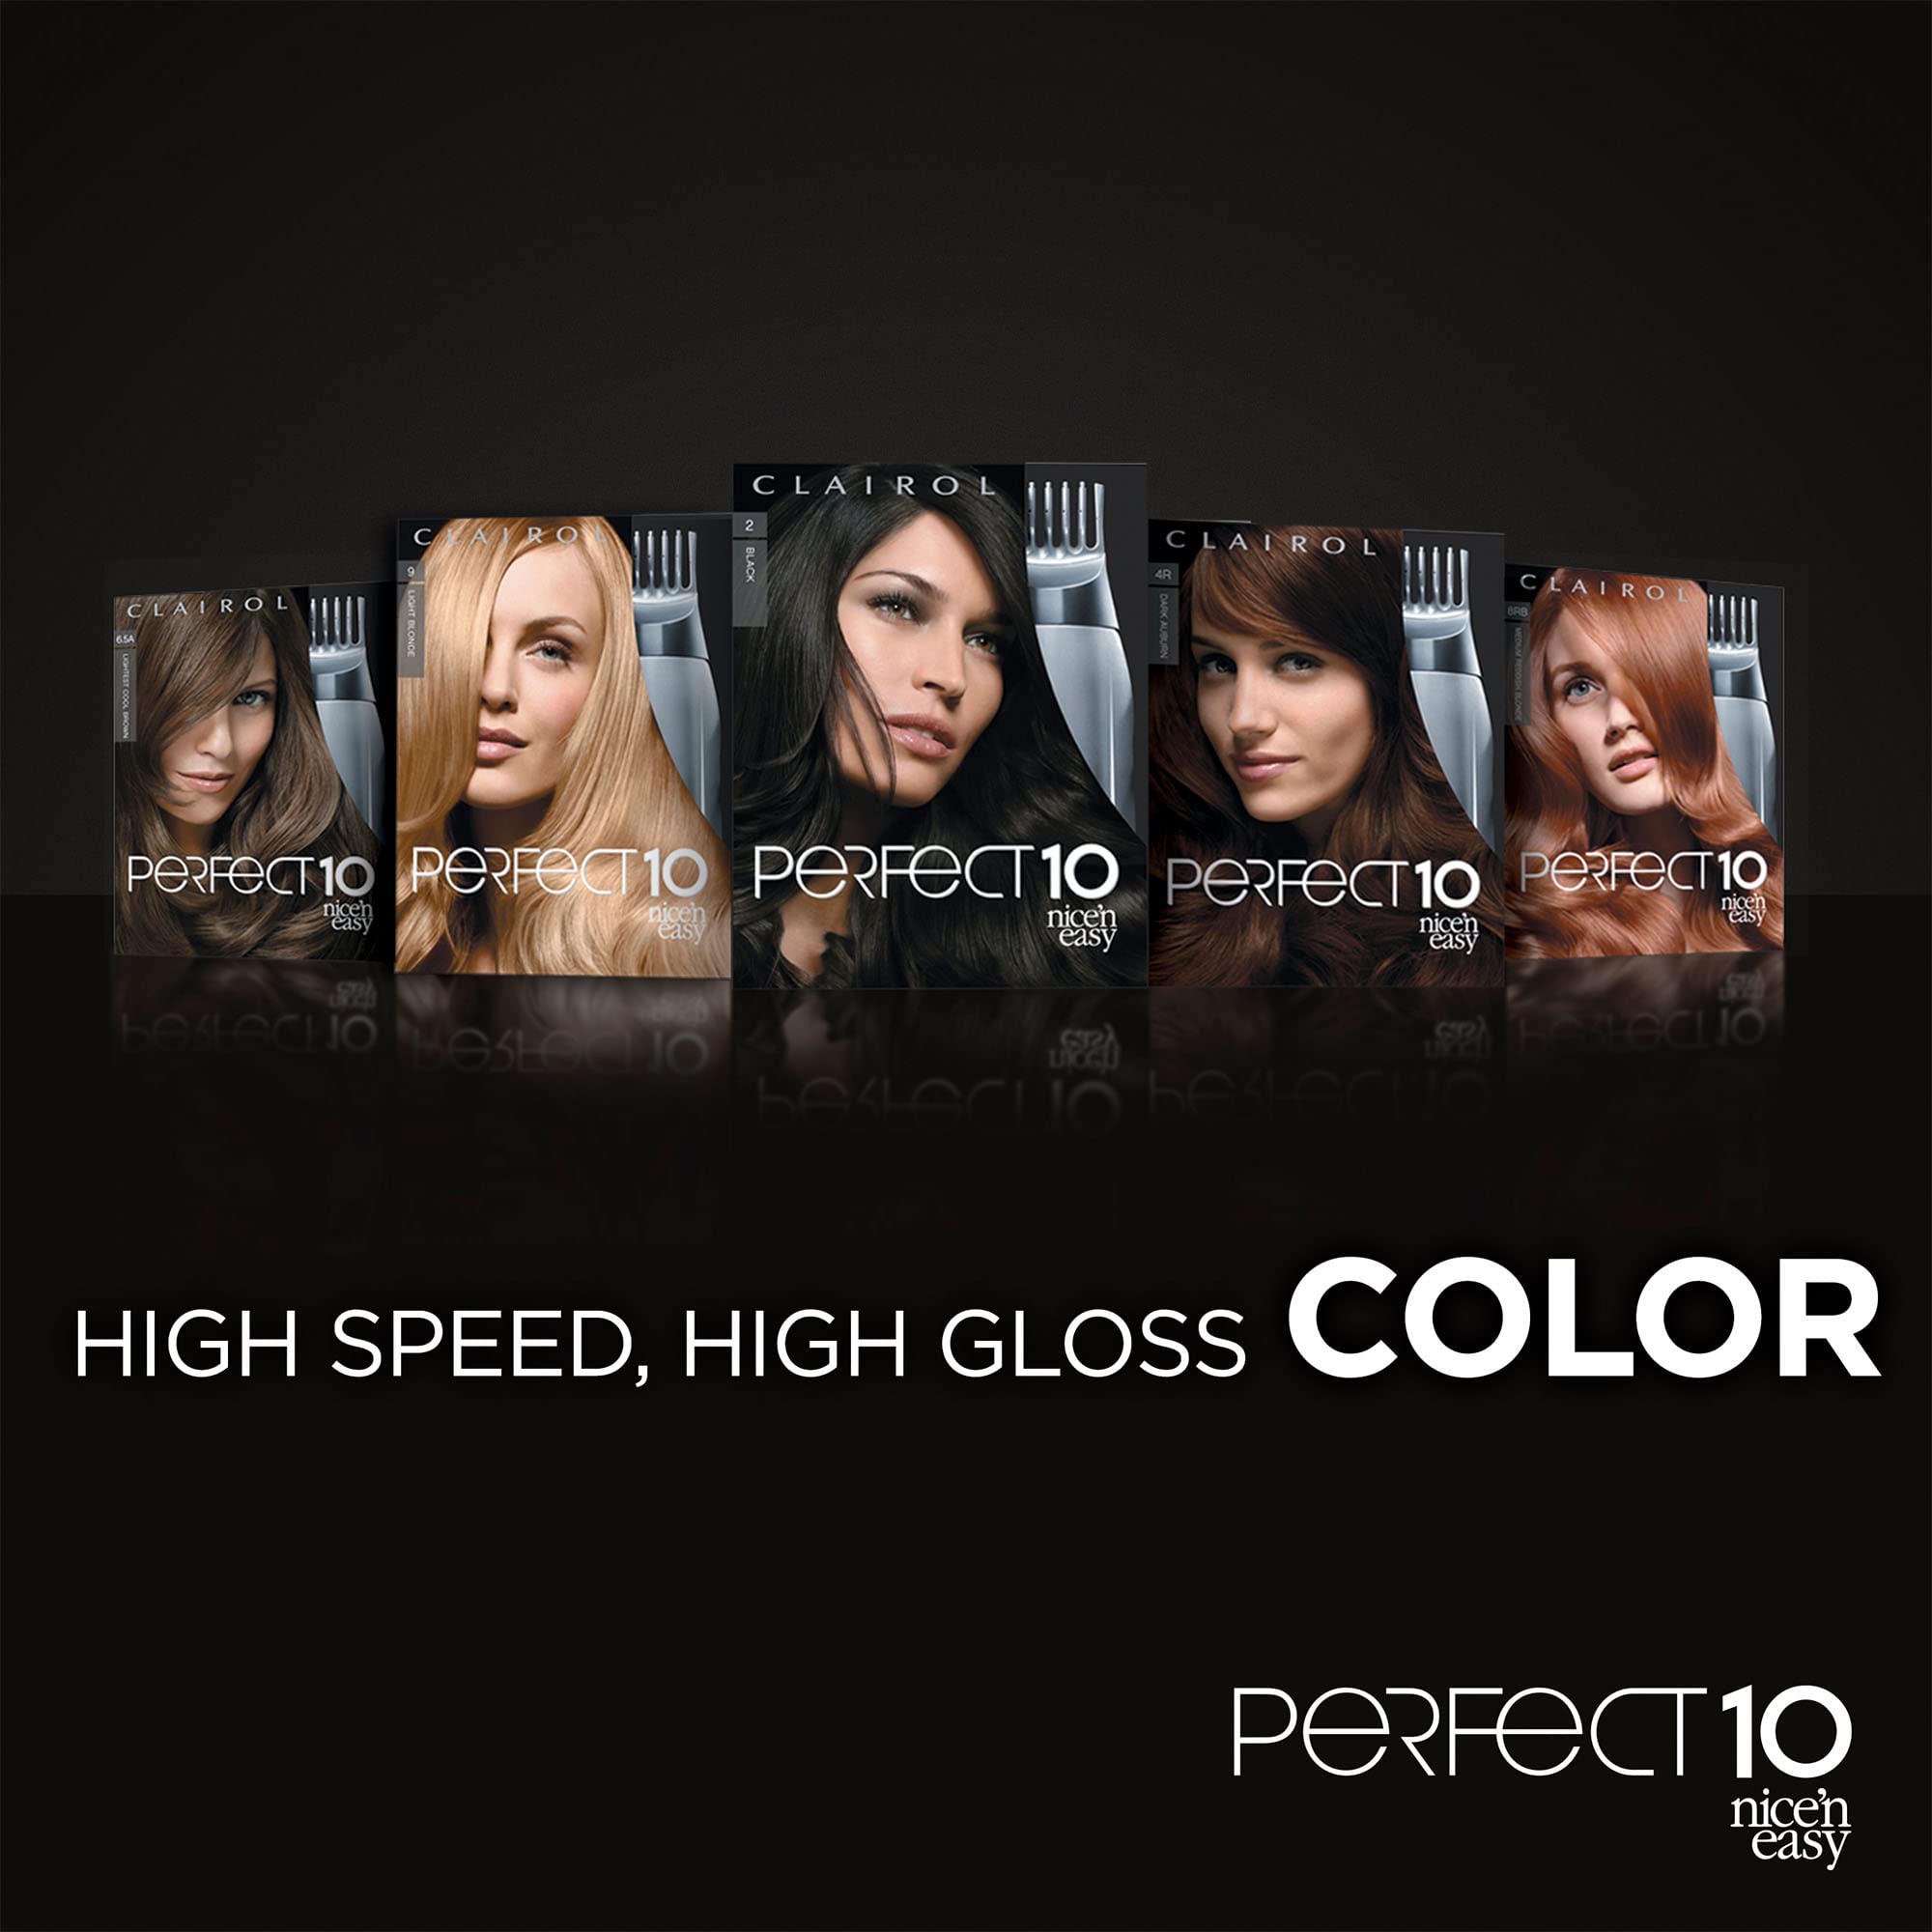 Clairol Nice'n Easy Perfect 10 Permanent Hair Dye, 2 Black Hair Color, Pack of 1